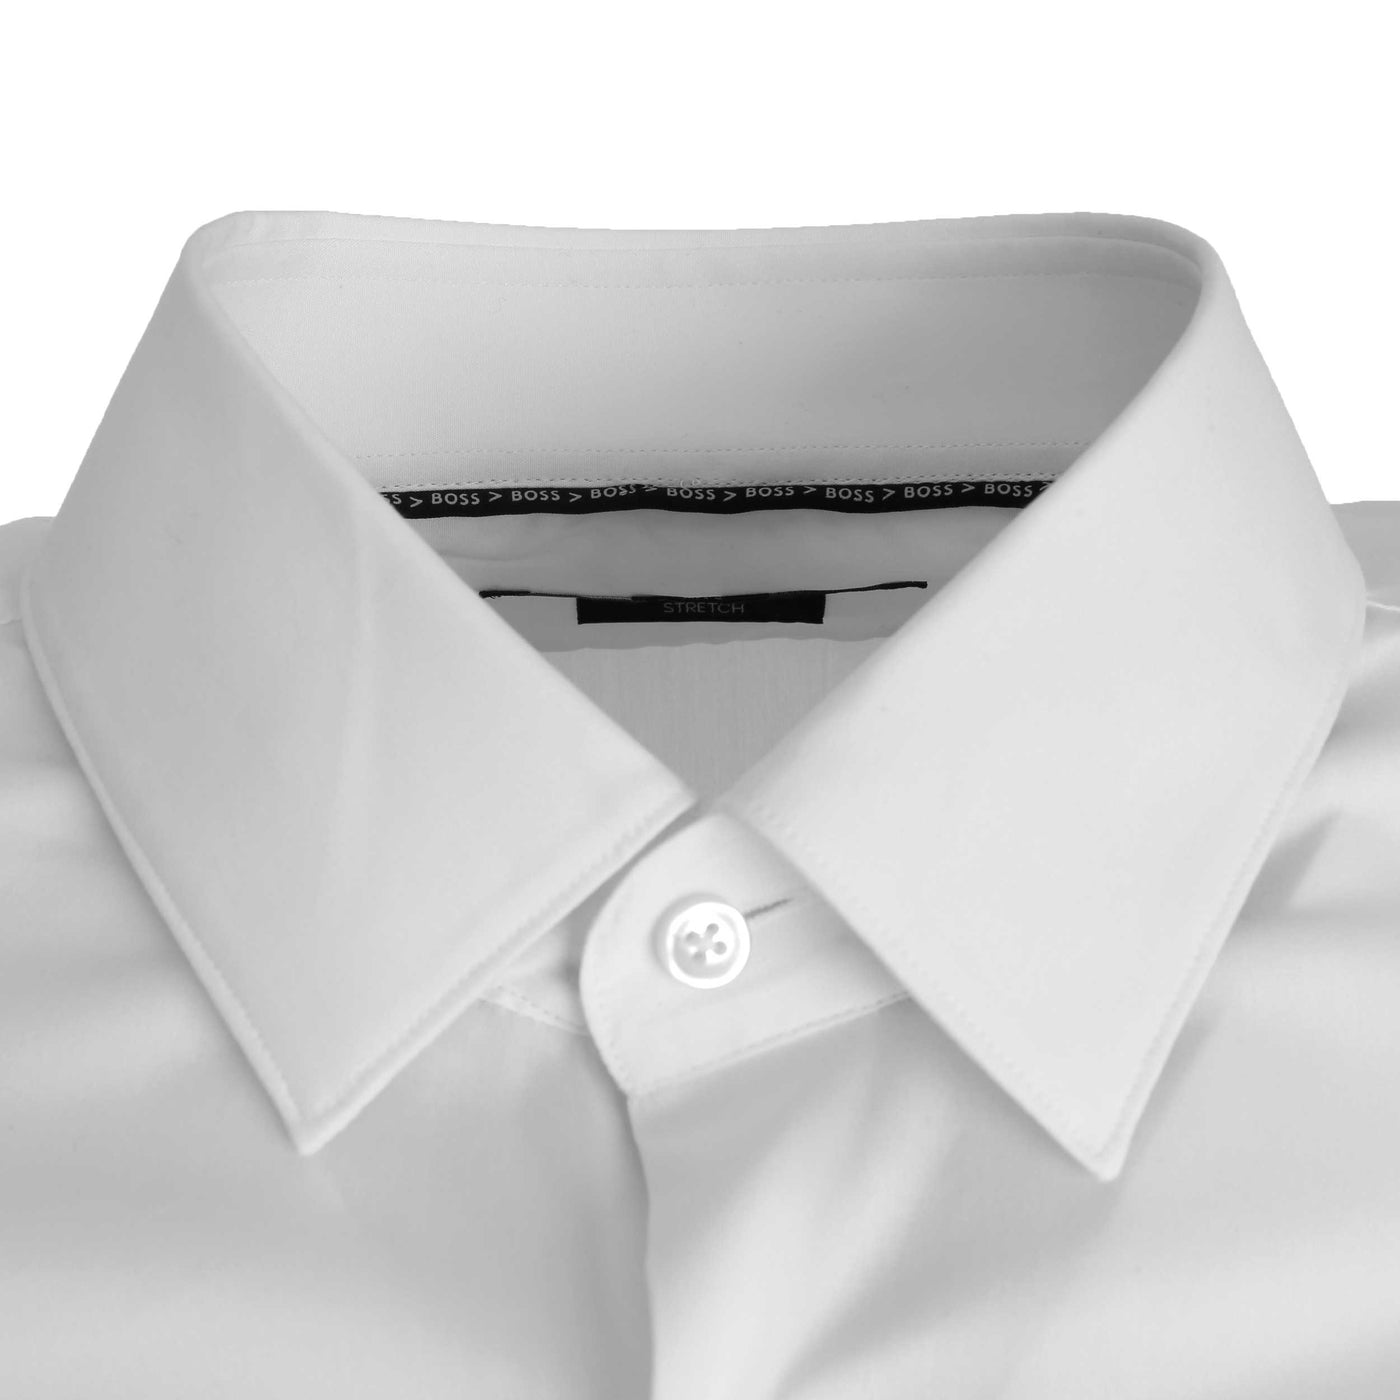 BOSS P Ray s kent C1 224 Shirt in White Collar